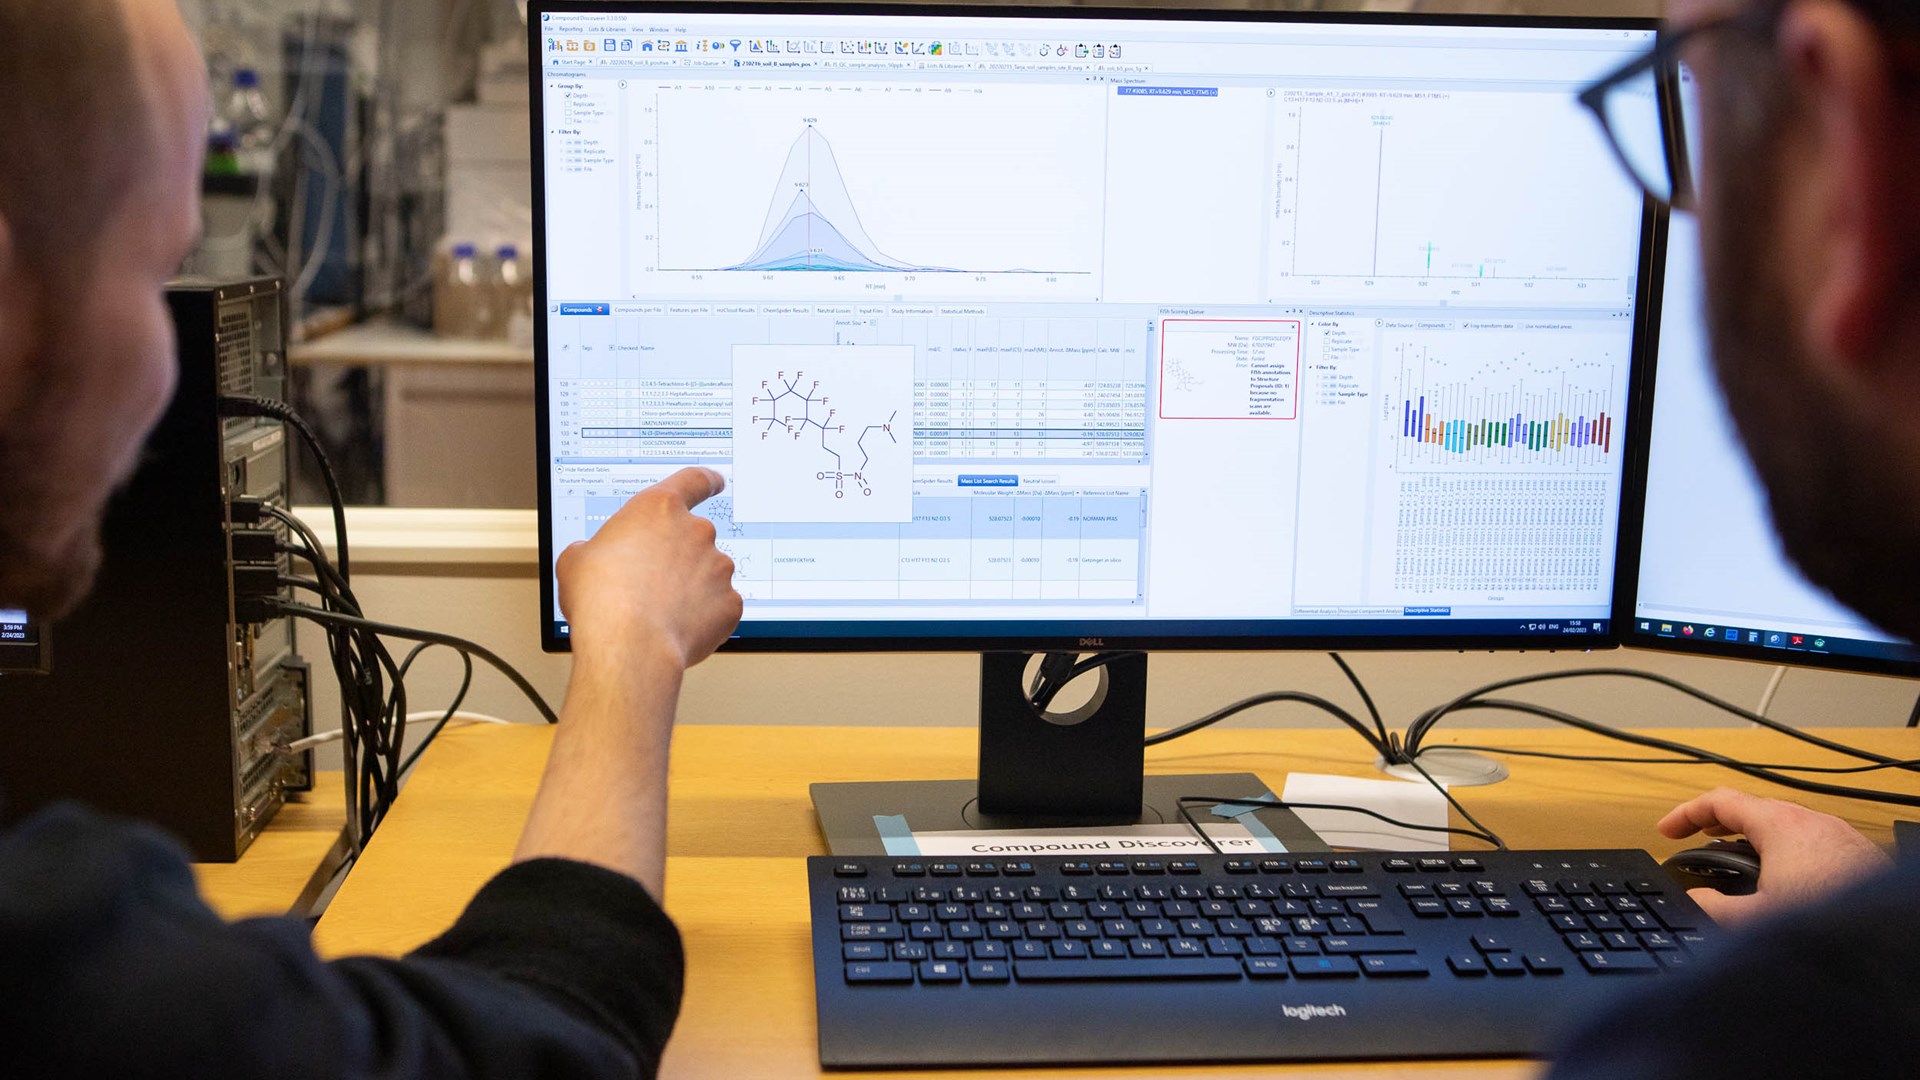 Bild av två personer som sitter vid ett skrivbord och tittar och pekar på en skärm. På skärmen syns ett diagram med en kurva, massor av siffror och en figur som visar den kemiska sammansättningen av något.